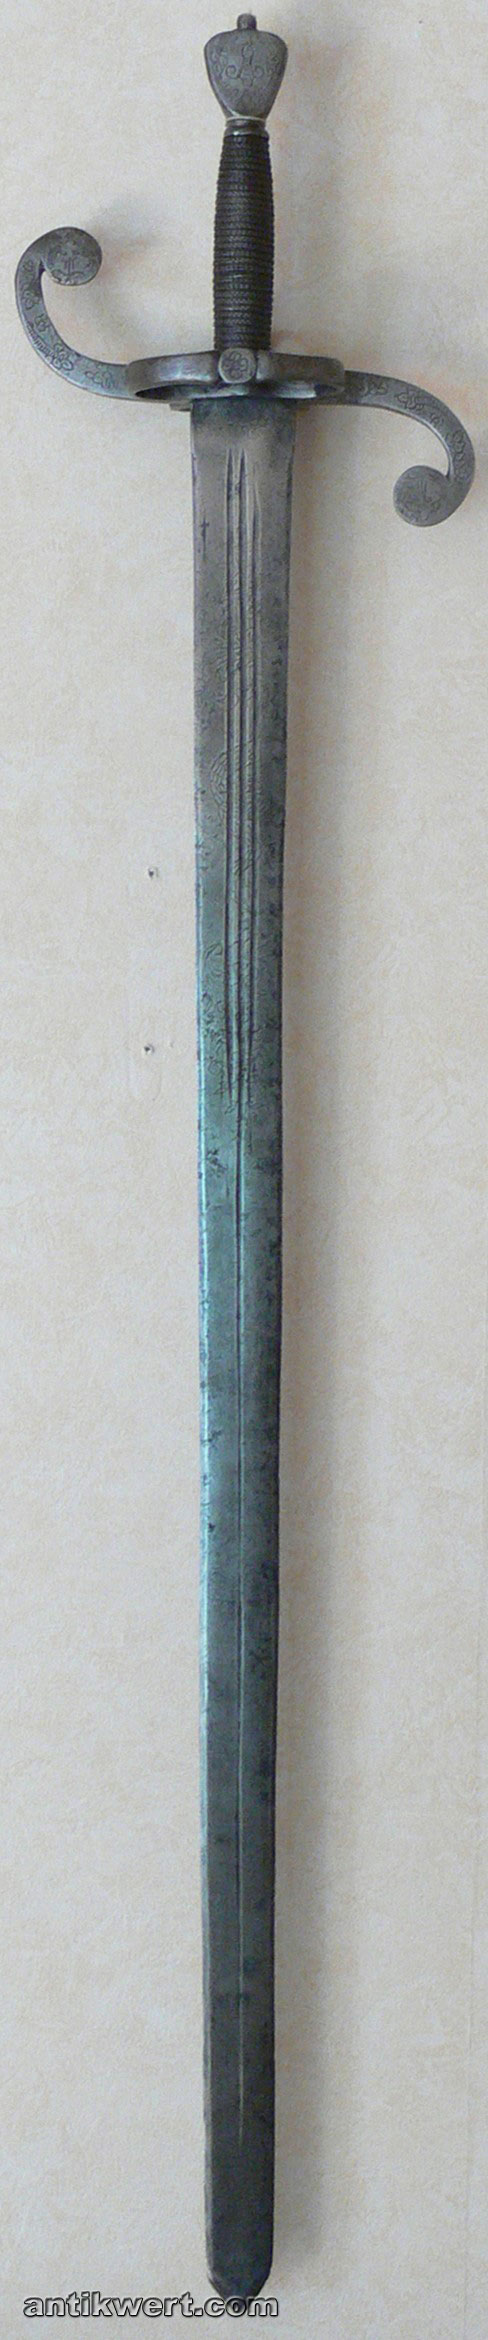 Reiterschwert-schwedisch-606 um 1630